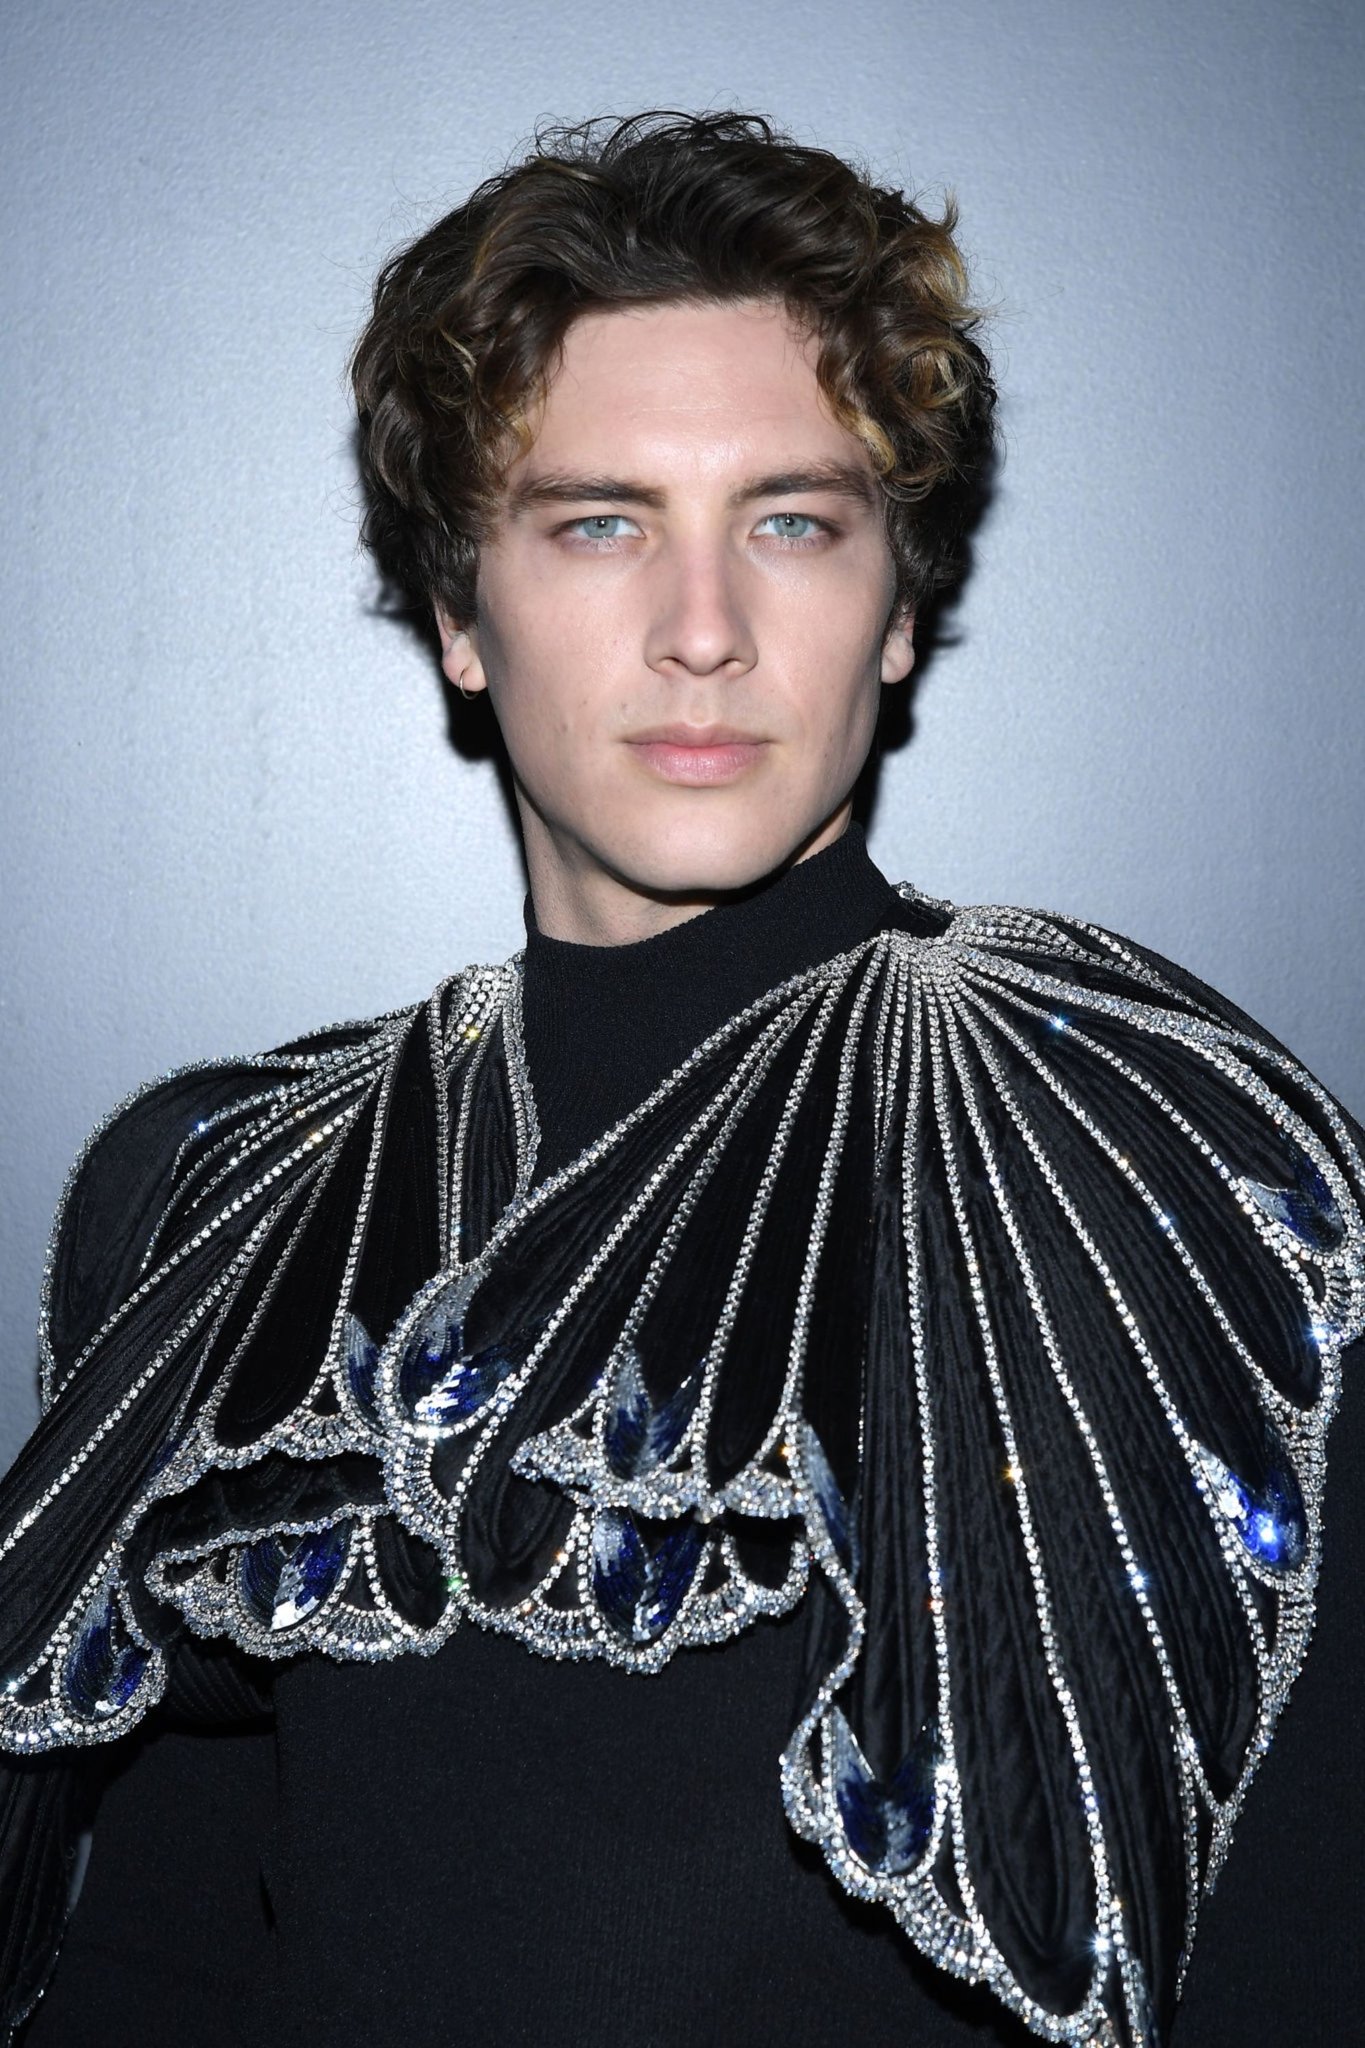 Cody Fern Source — Cody Fern attends the Louis Vuitton Womenswear